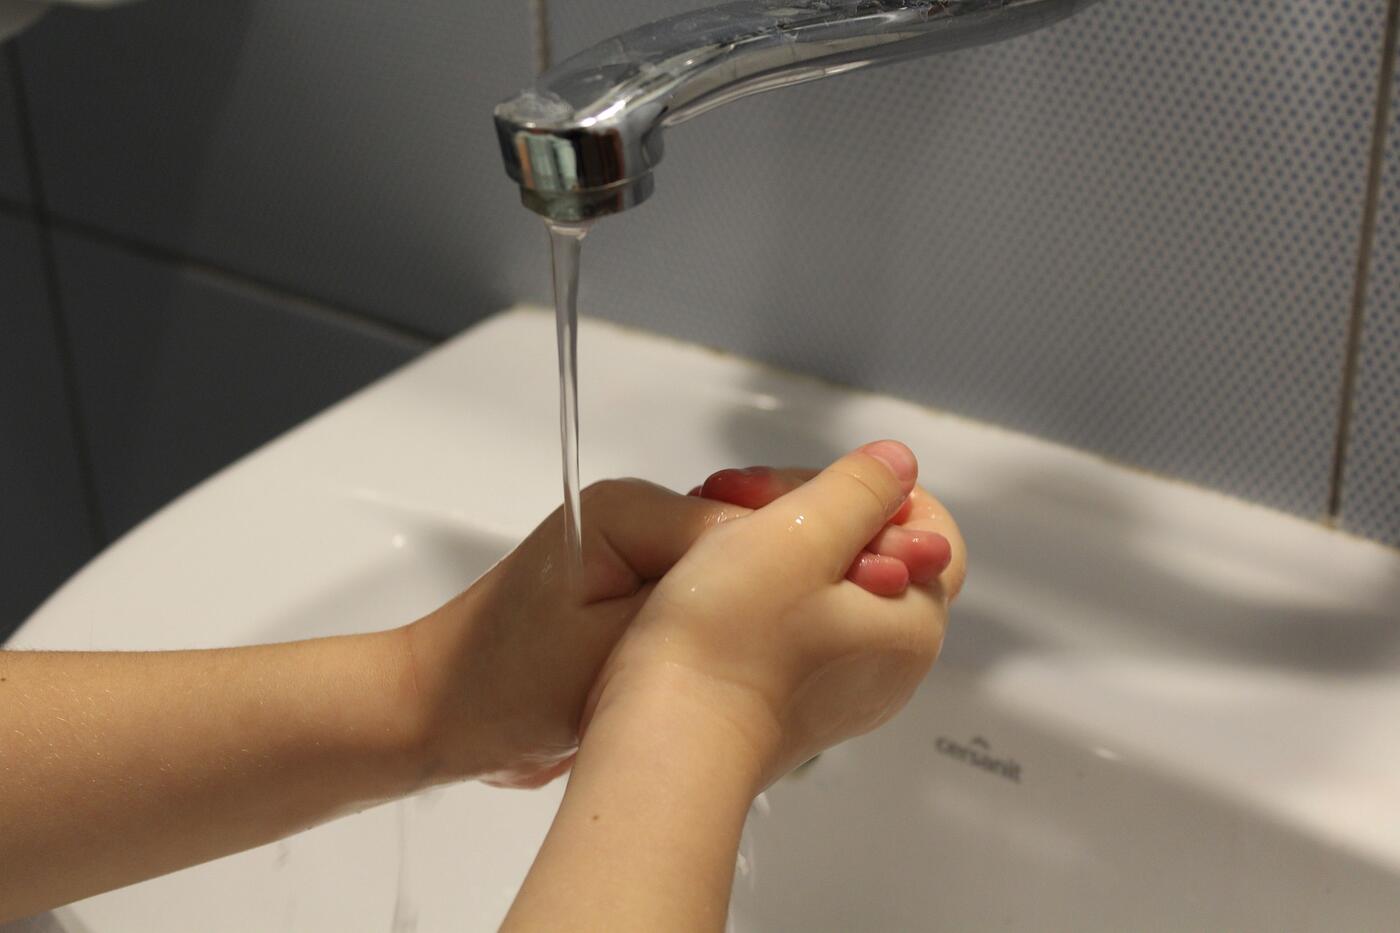 Kinderhände beim Händewaschen